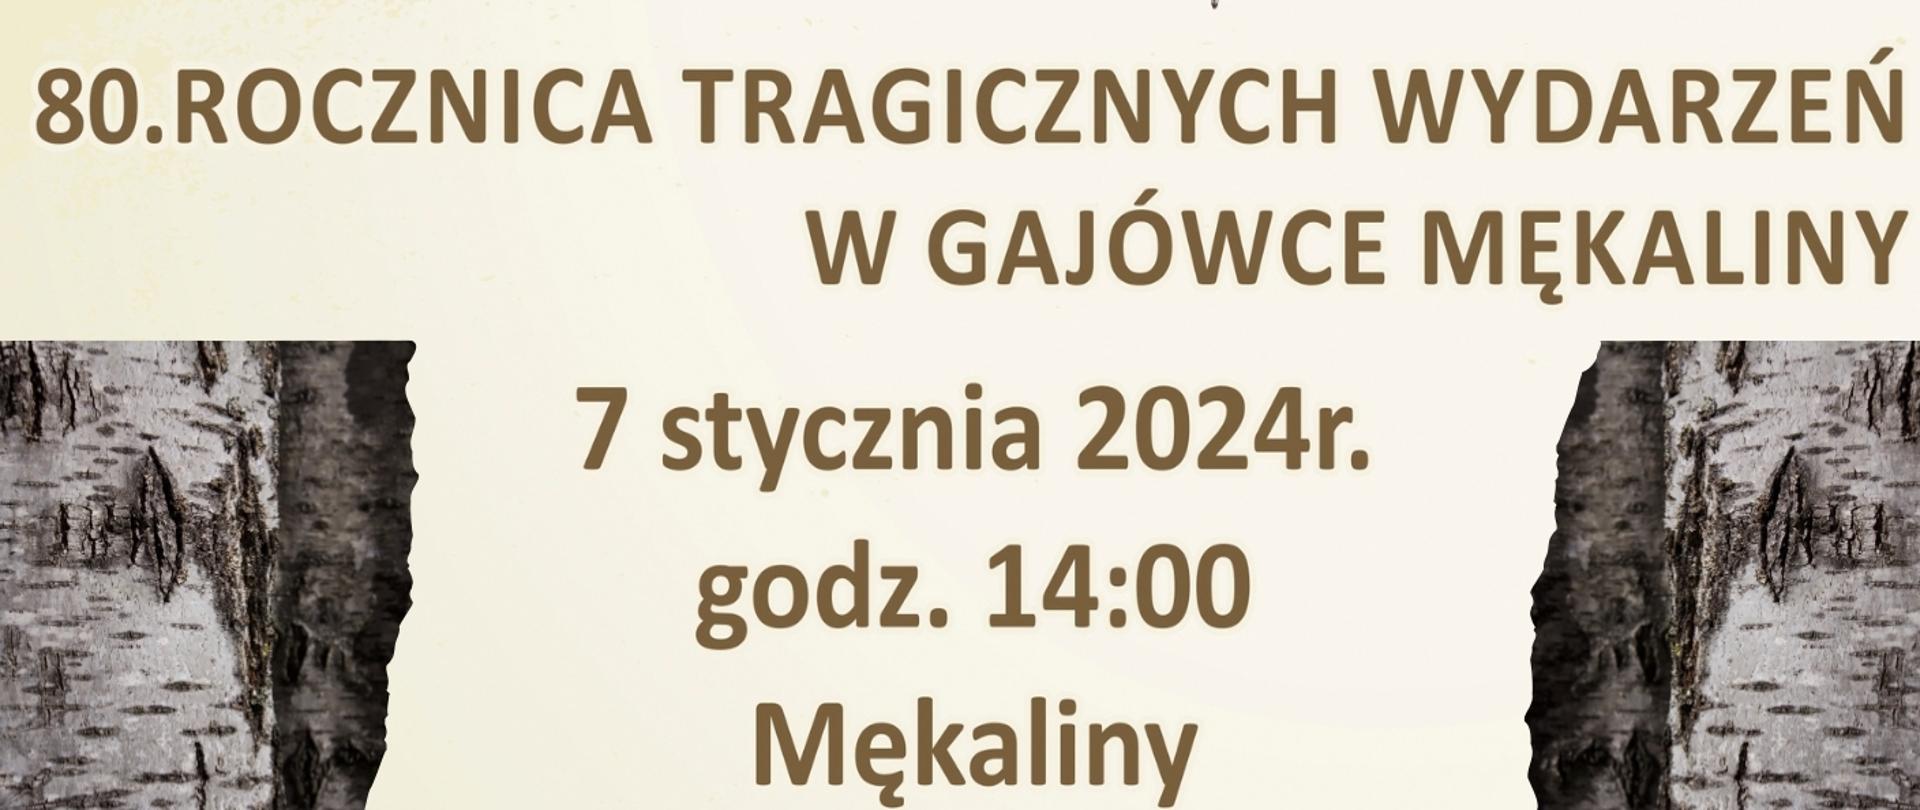 Plakat promujący upamiętnienie tragicznych wydarzeń w gajówce Mękaliny. Zdjęcie mogiły oraz cytat: "Nie wstydźmy się kochać Polski, nie mówmy o niej tylko od święta. Ginęli za wolność ludzie. Musimy zawsze o tym pamiętać E. Buczyńska "Myślimy o Polsce." Poniżej treść: "80. rocznica tragicznych wydarzeń w gajówce Mękaliny, 7 stycznia 2024 r. godz. 14.00 Mękaliny, Marsz Pamięci na Mękaliny wyruszy z Knurowca Udrzynka i Budykrza. Szczegóły u Sołtysów" Poniżej program uroczystości oraz logotypy organizatorów i patronów.